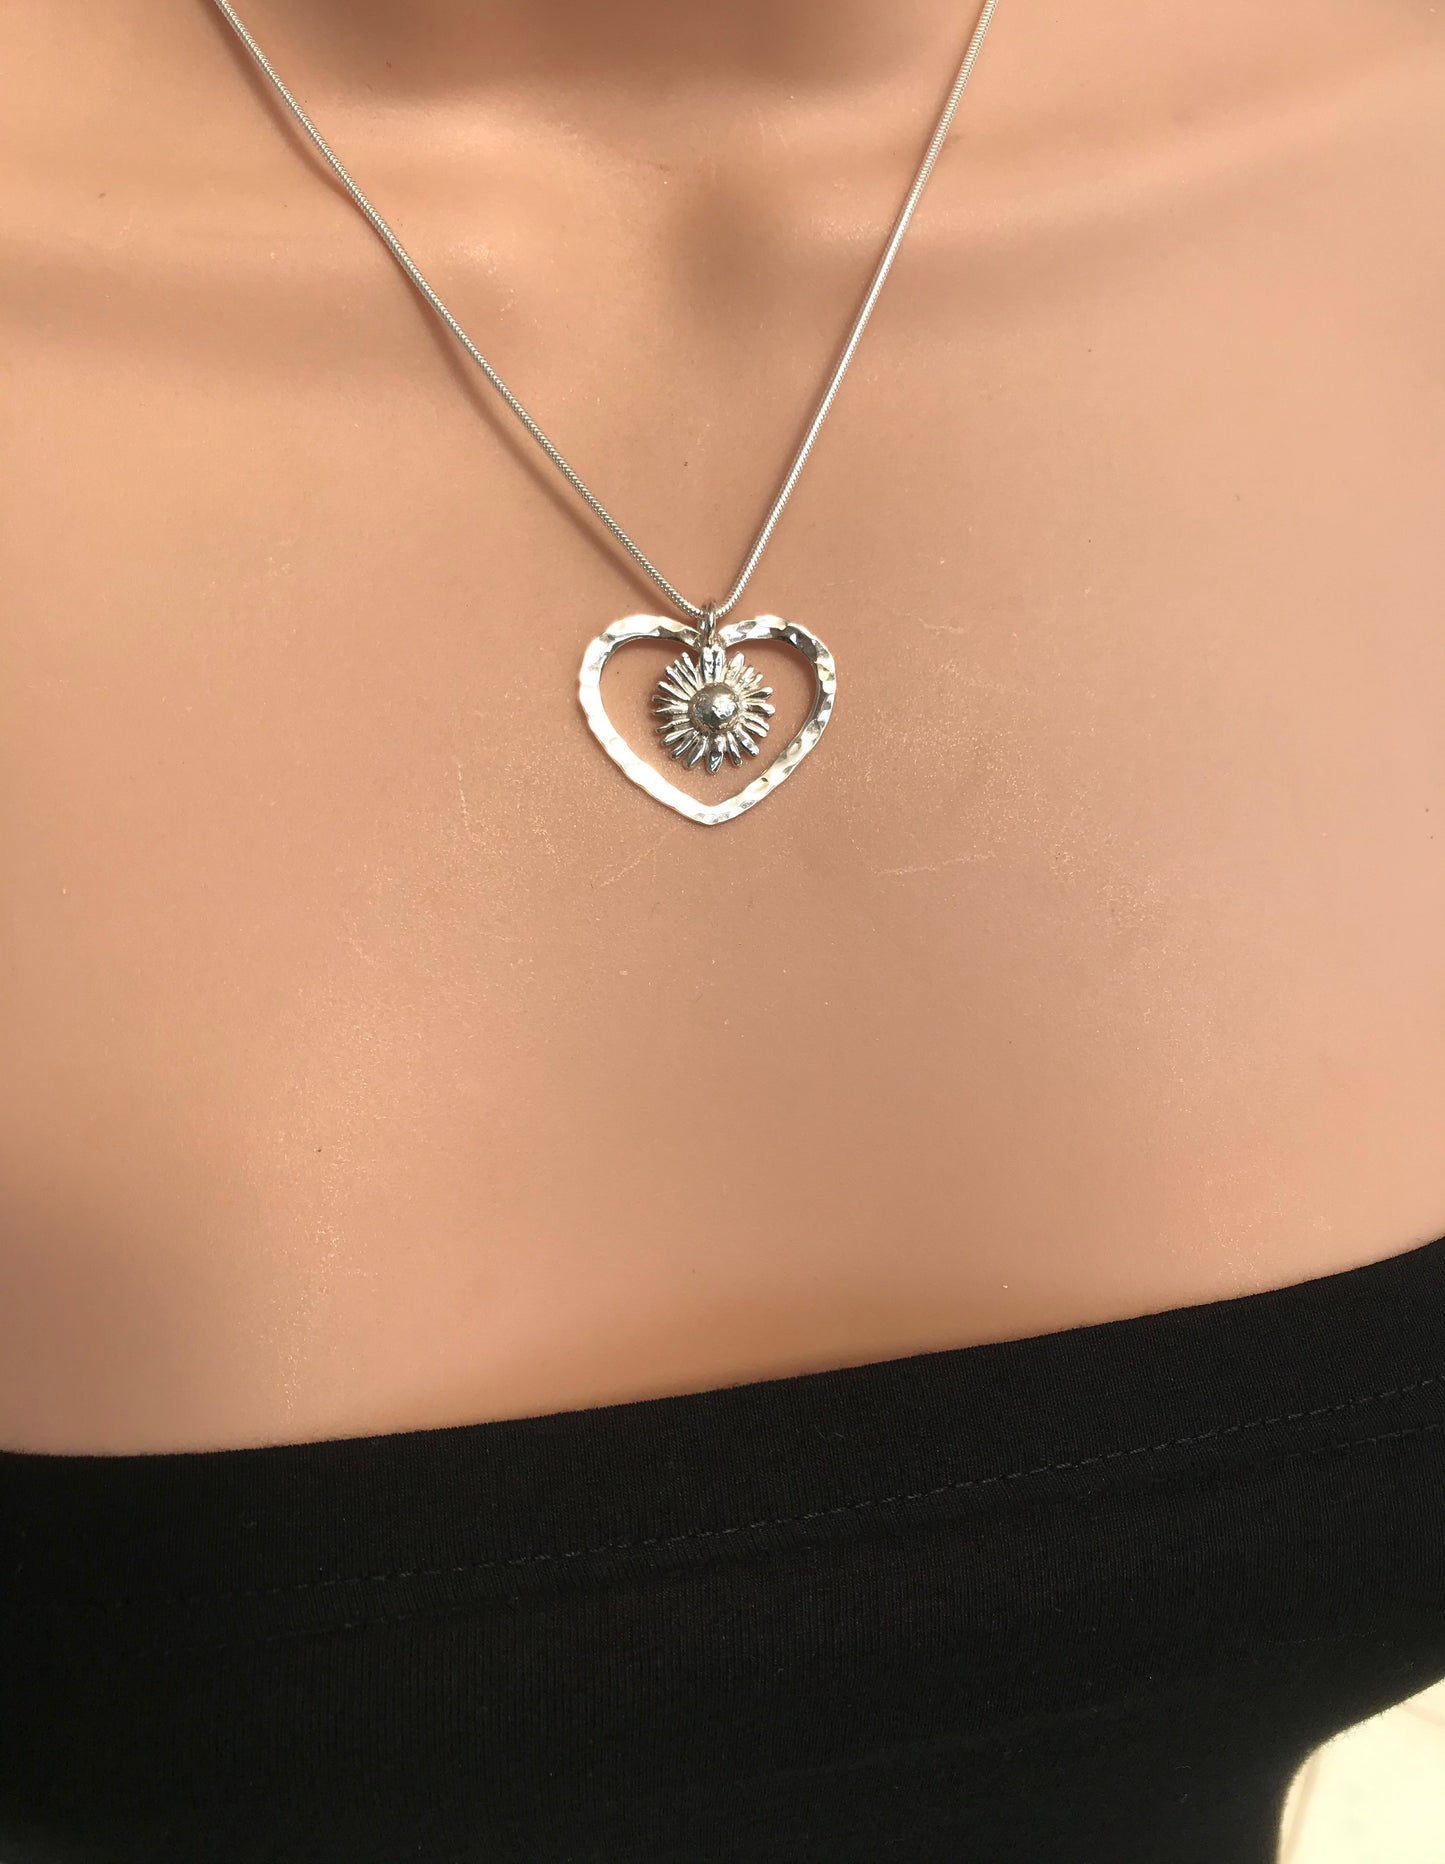 Daisy heart necklace